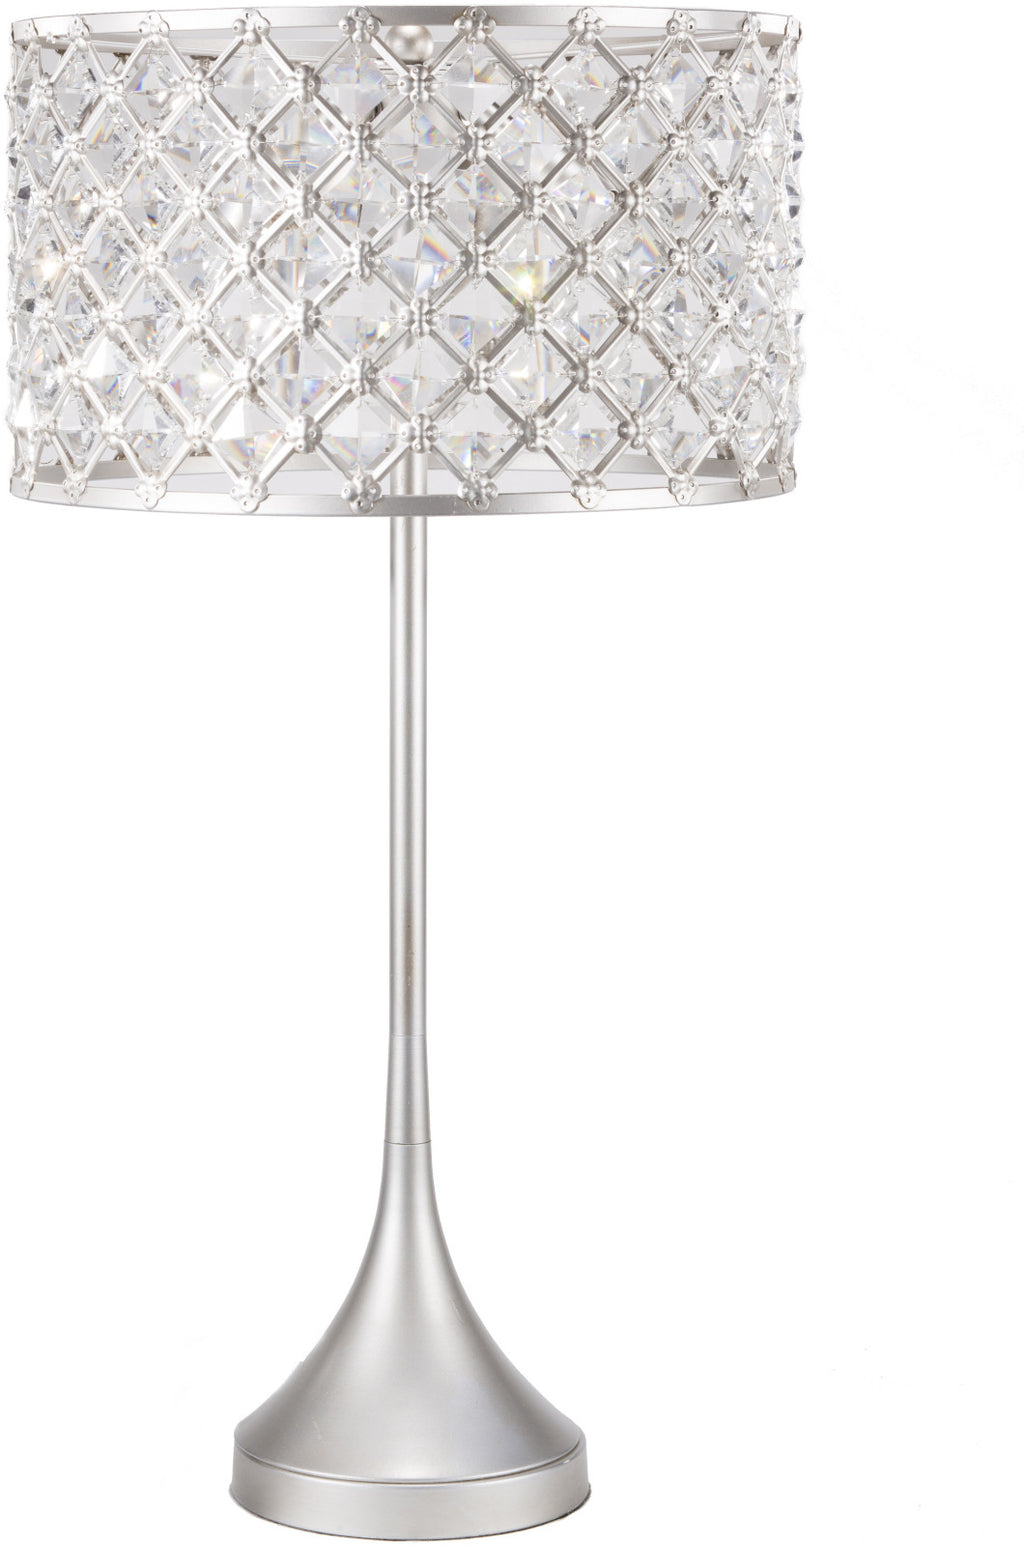 Surya Harlow HRLP-001 Silver Lamp Table Lamp